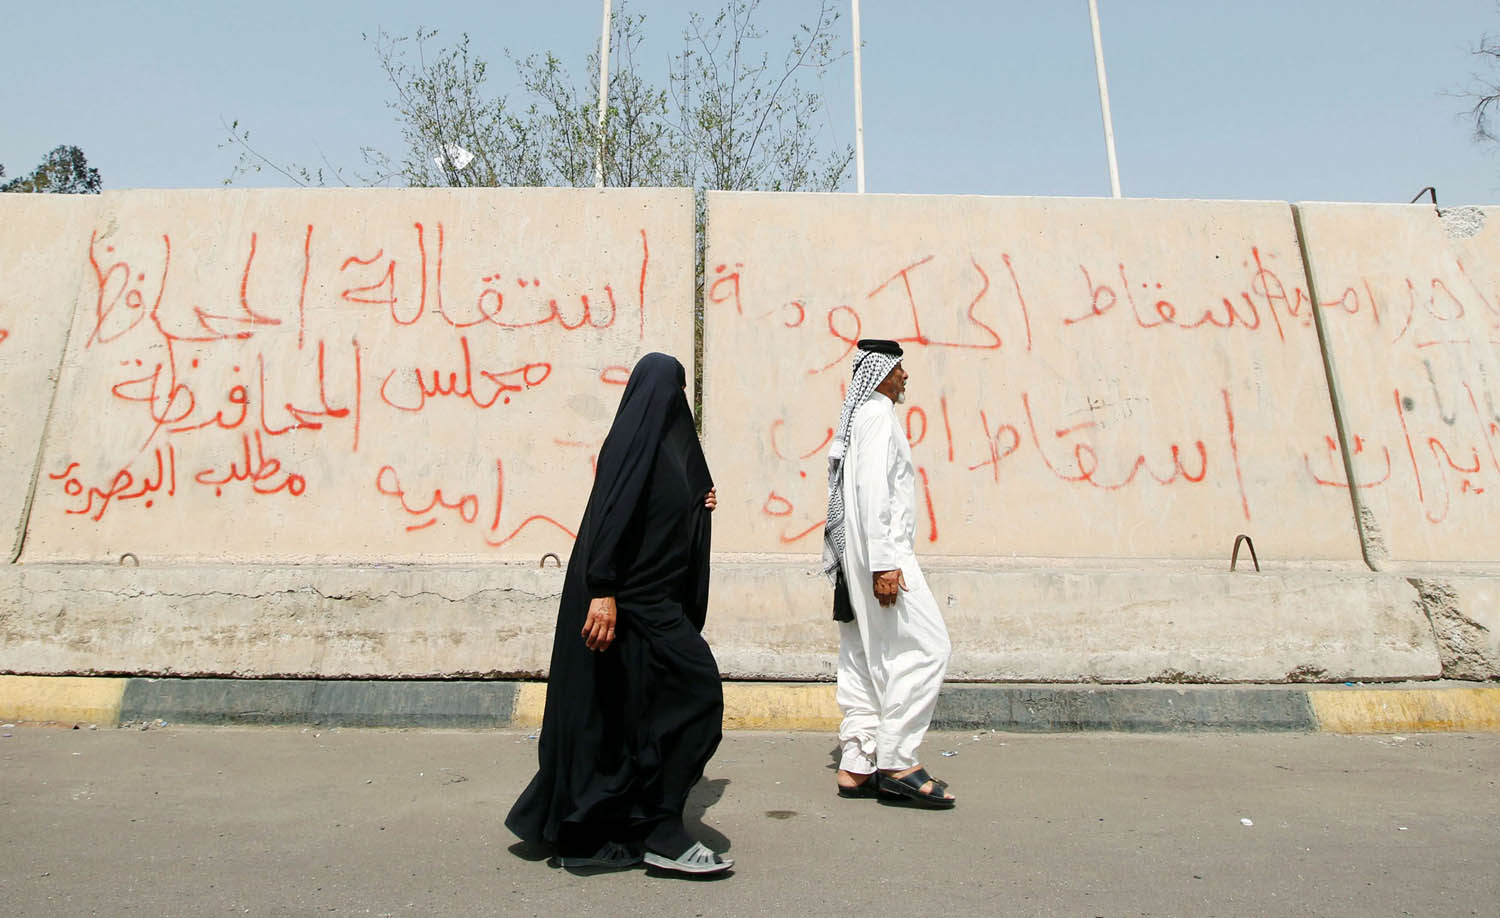 عراقي وعراقية يمران بجانب جدار يحمي منشأة حكومية في البصرة تلطخه الشعارات